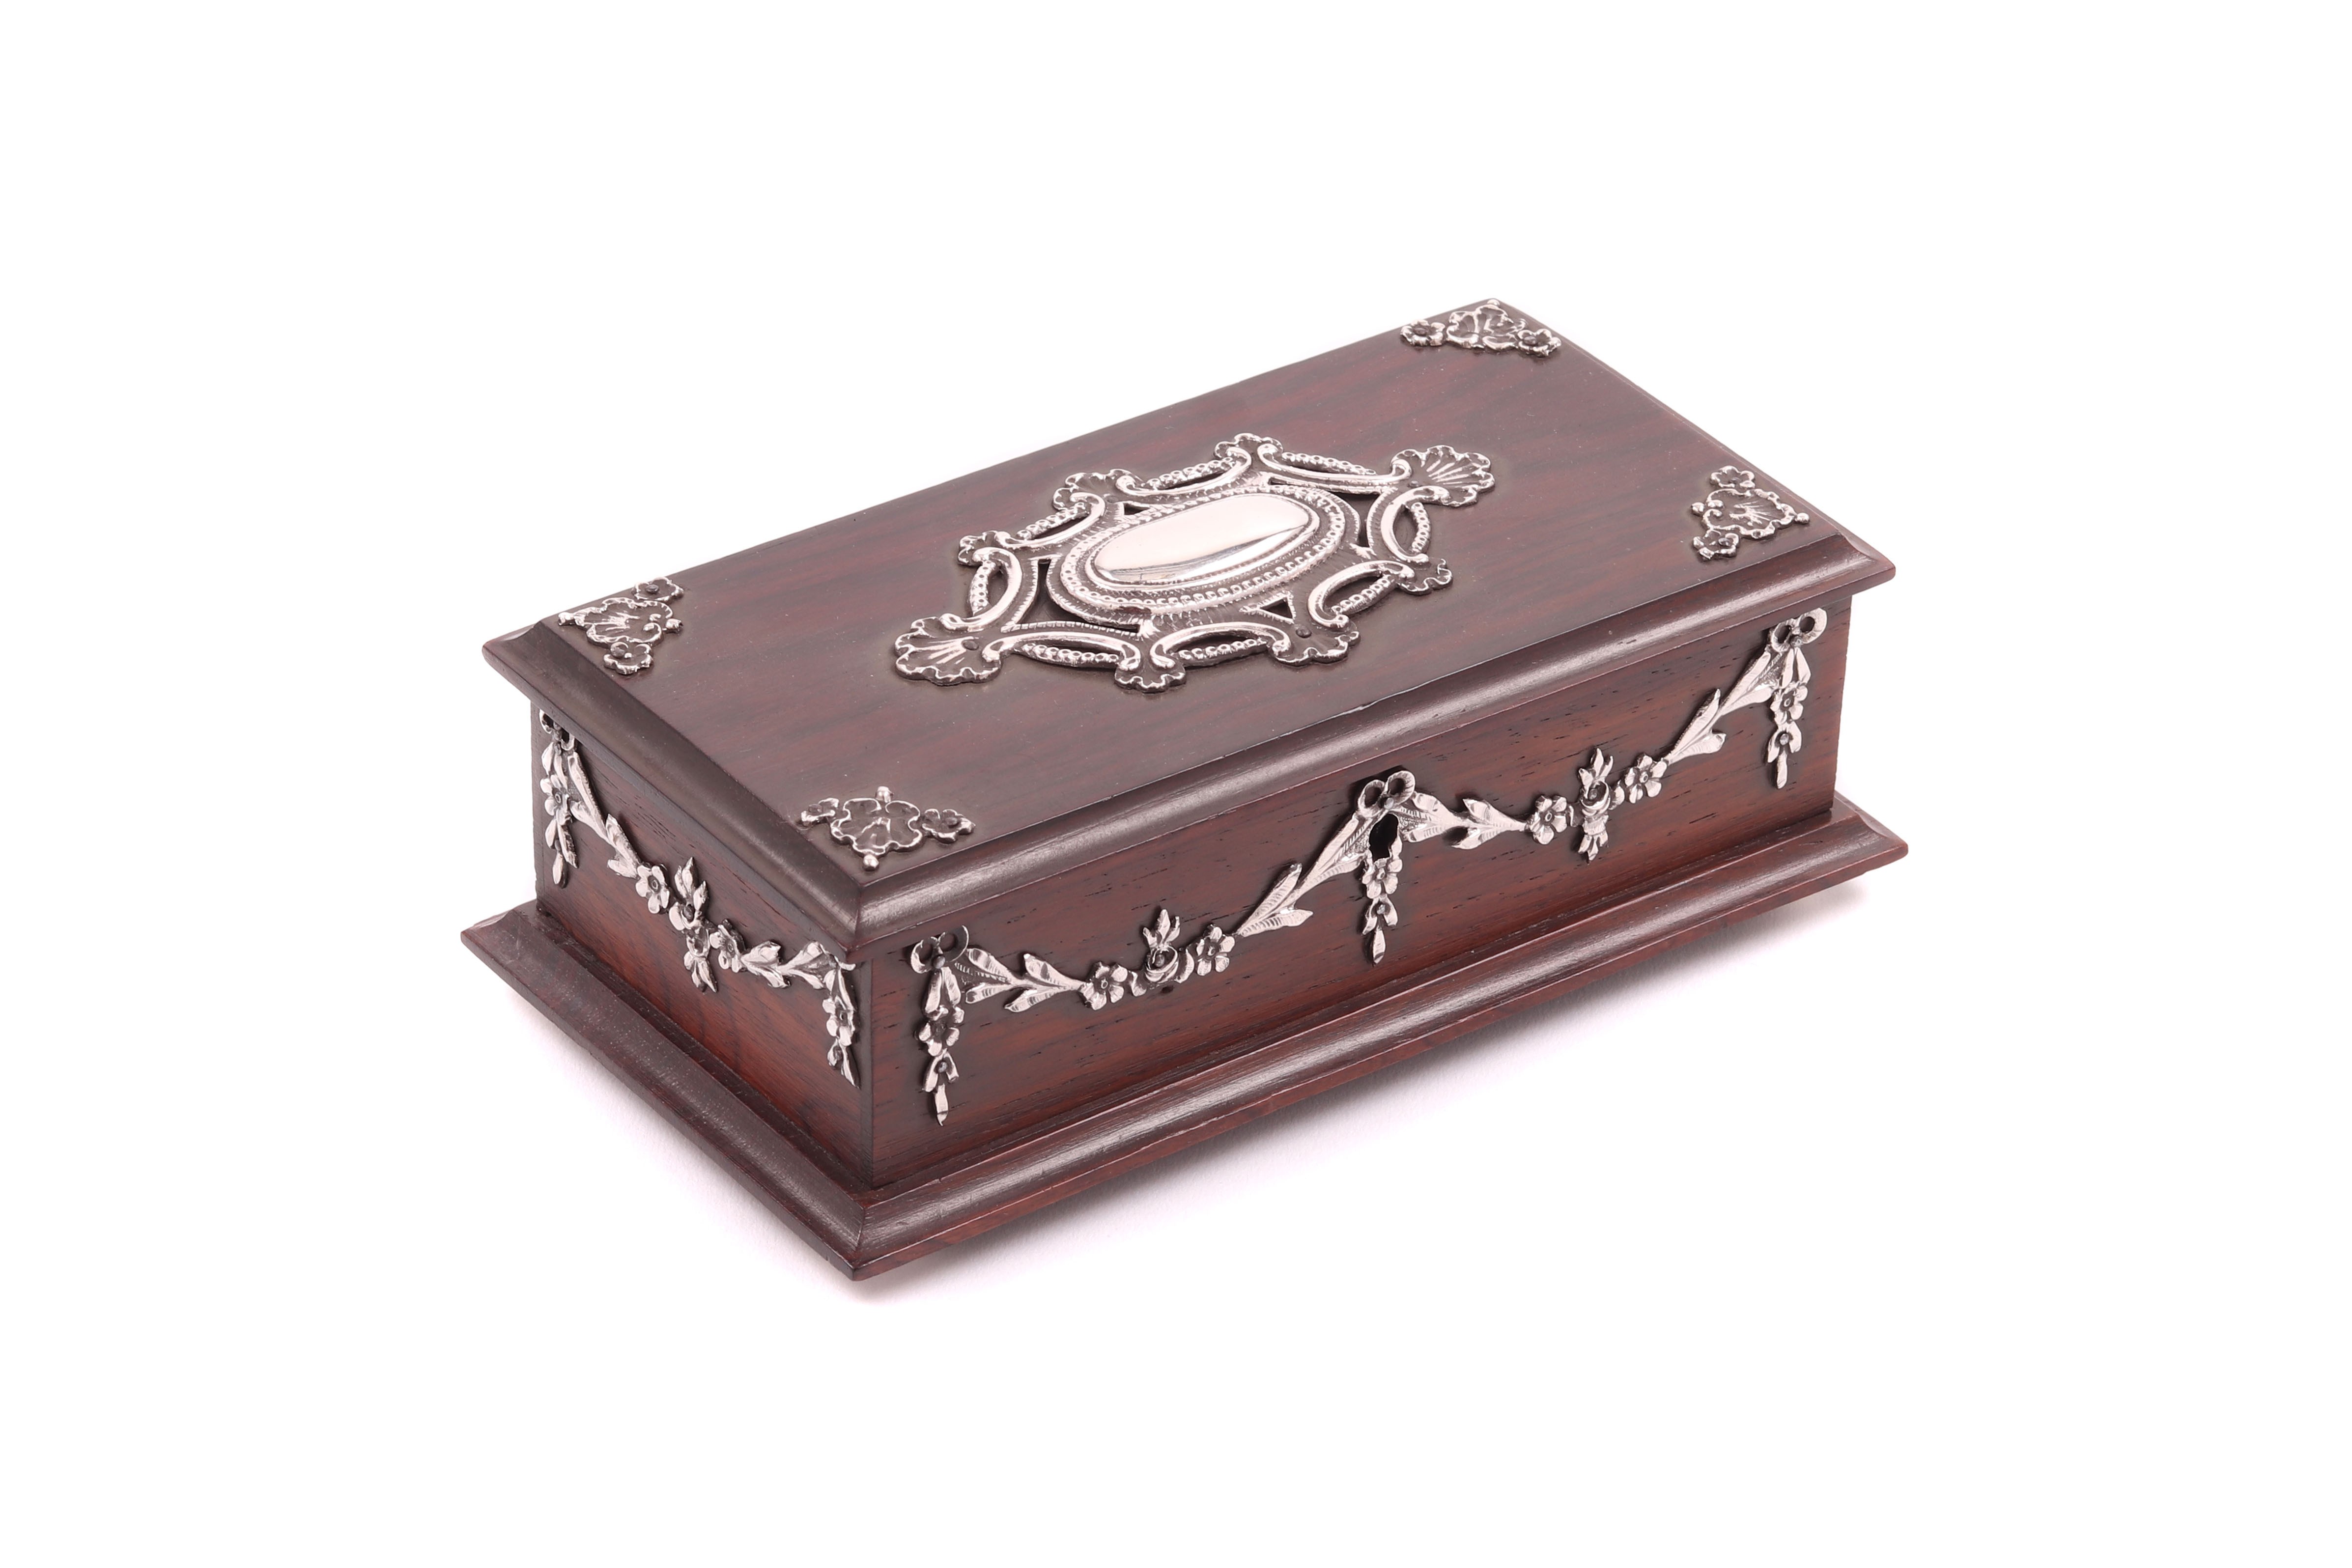 Caixa guarda-jóias em madeira exótica com montagens em prata portuguesa